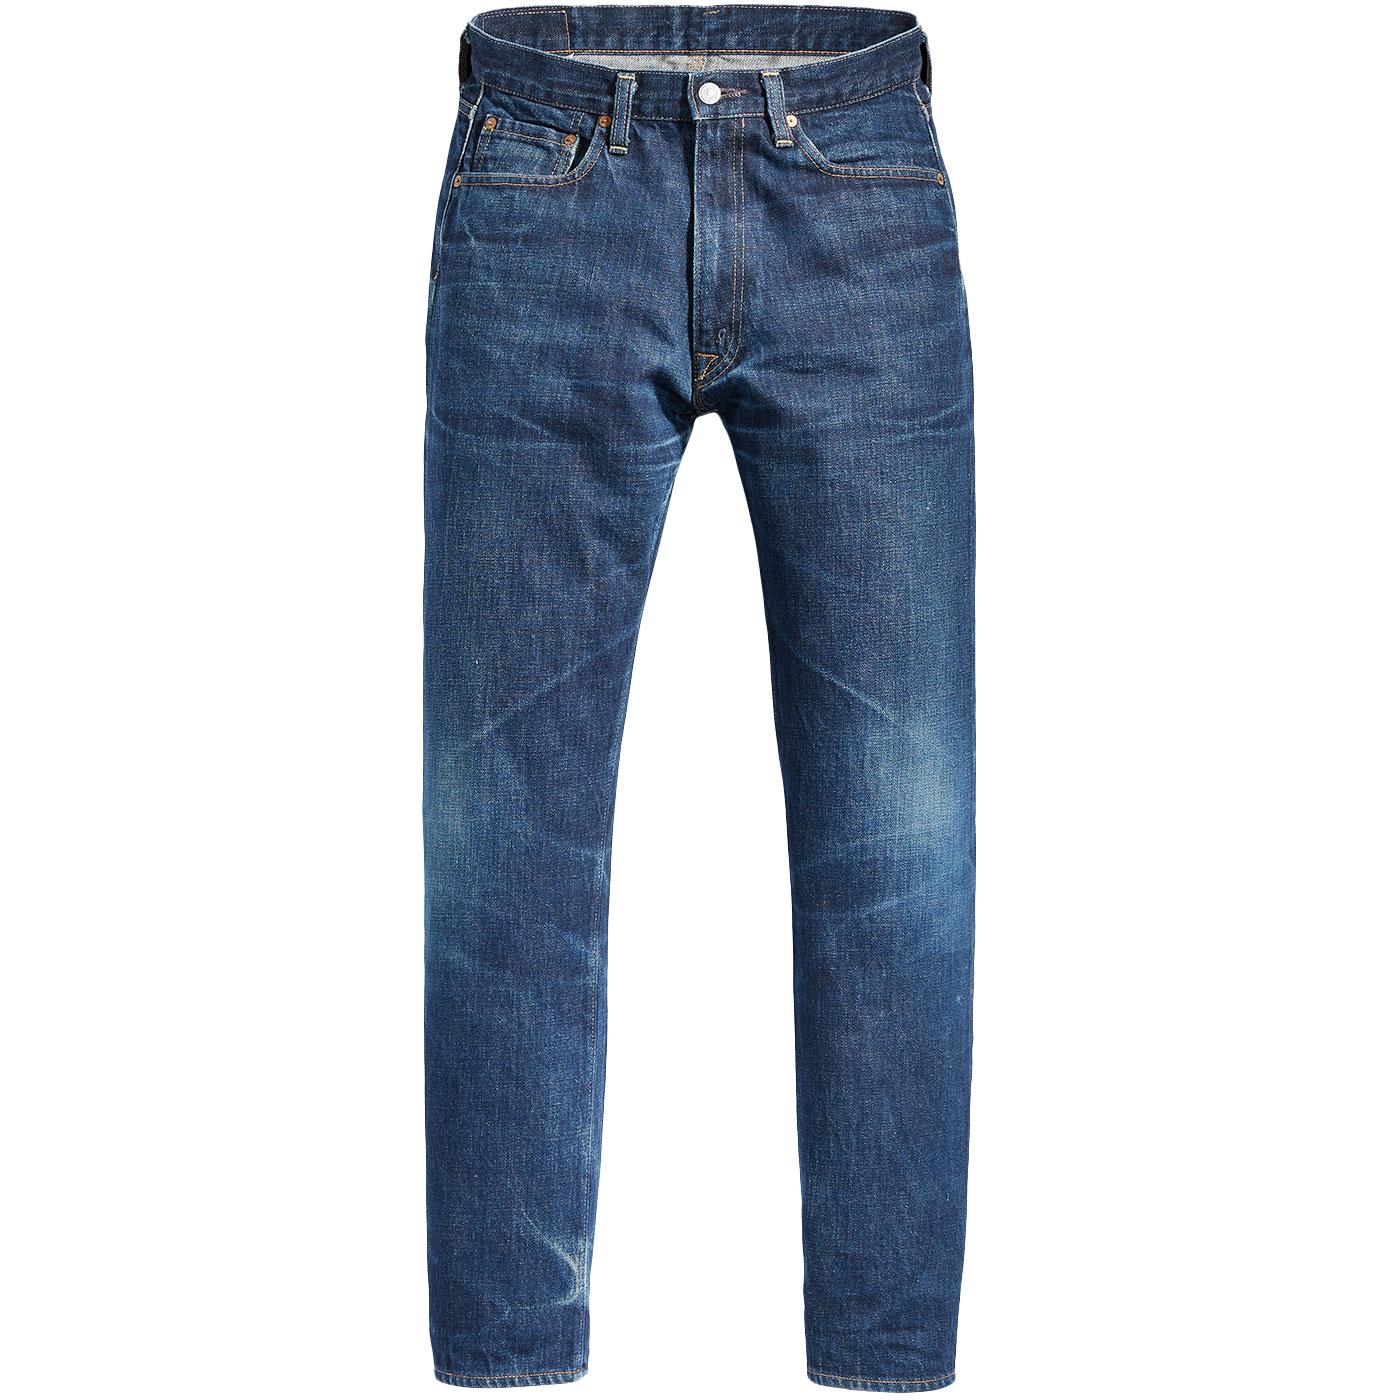 LEVI'S 512 Men's Retro Slim Taper Denim Jeans Adriatic Adapt